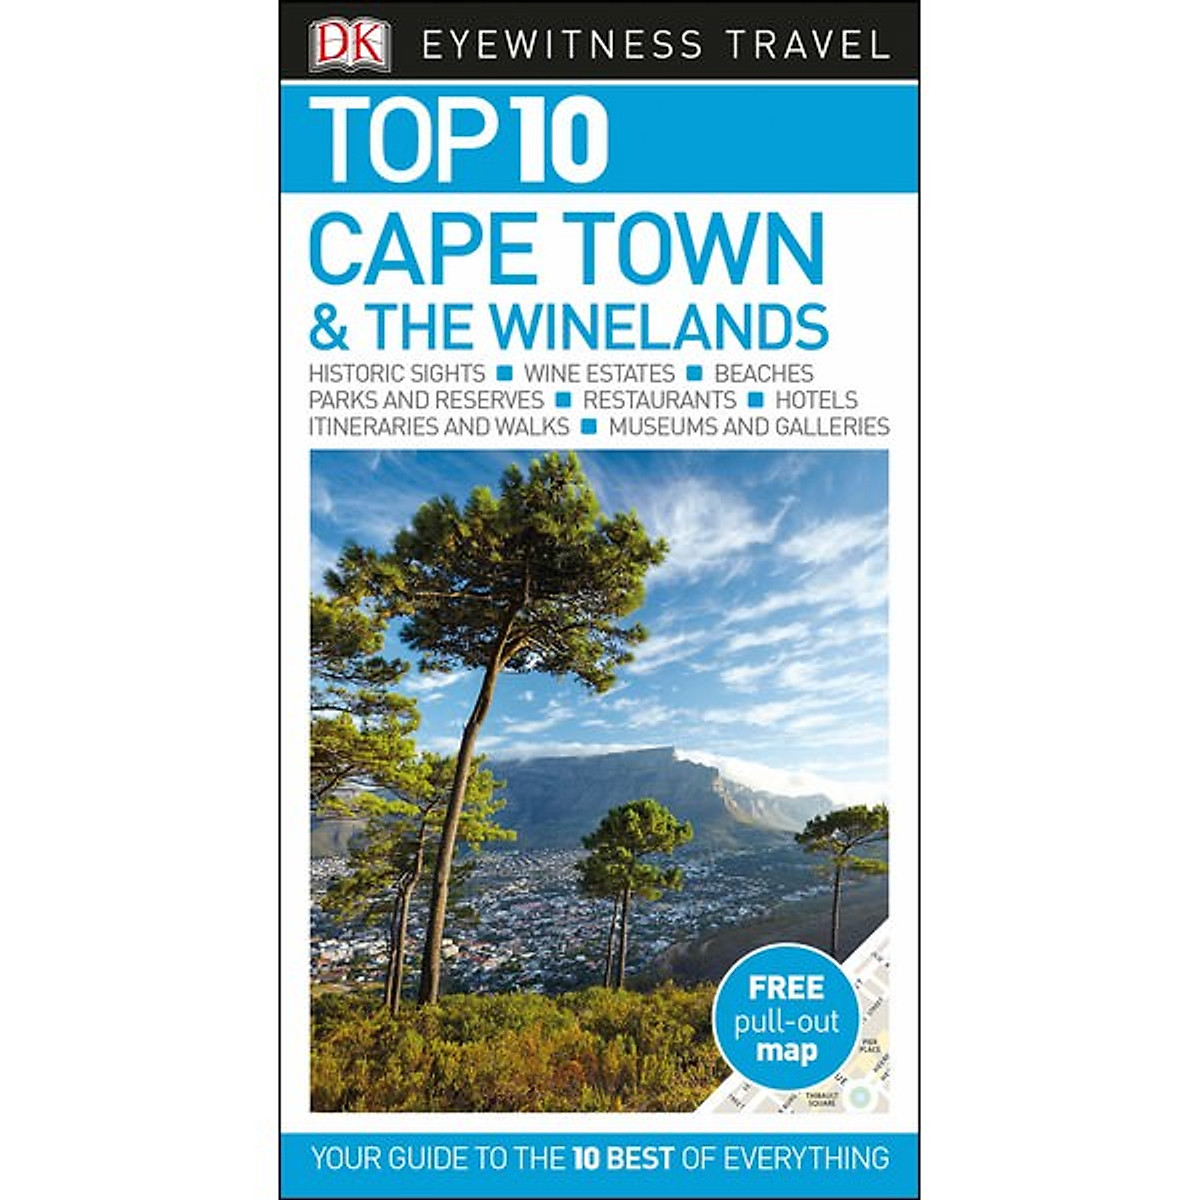 [Hàng thanh lý miễn đổi trả] DK Eyewitness Top 10 Cape Town and The Winelands